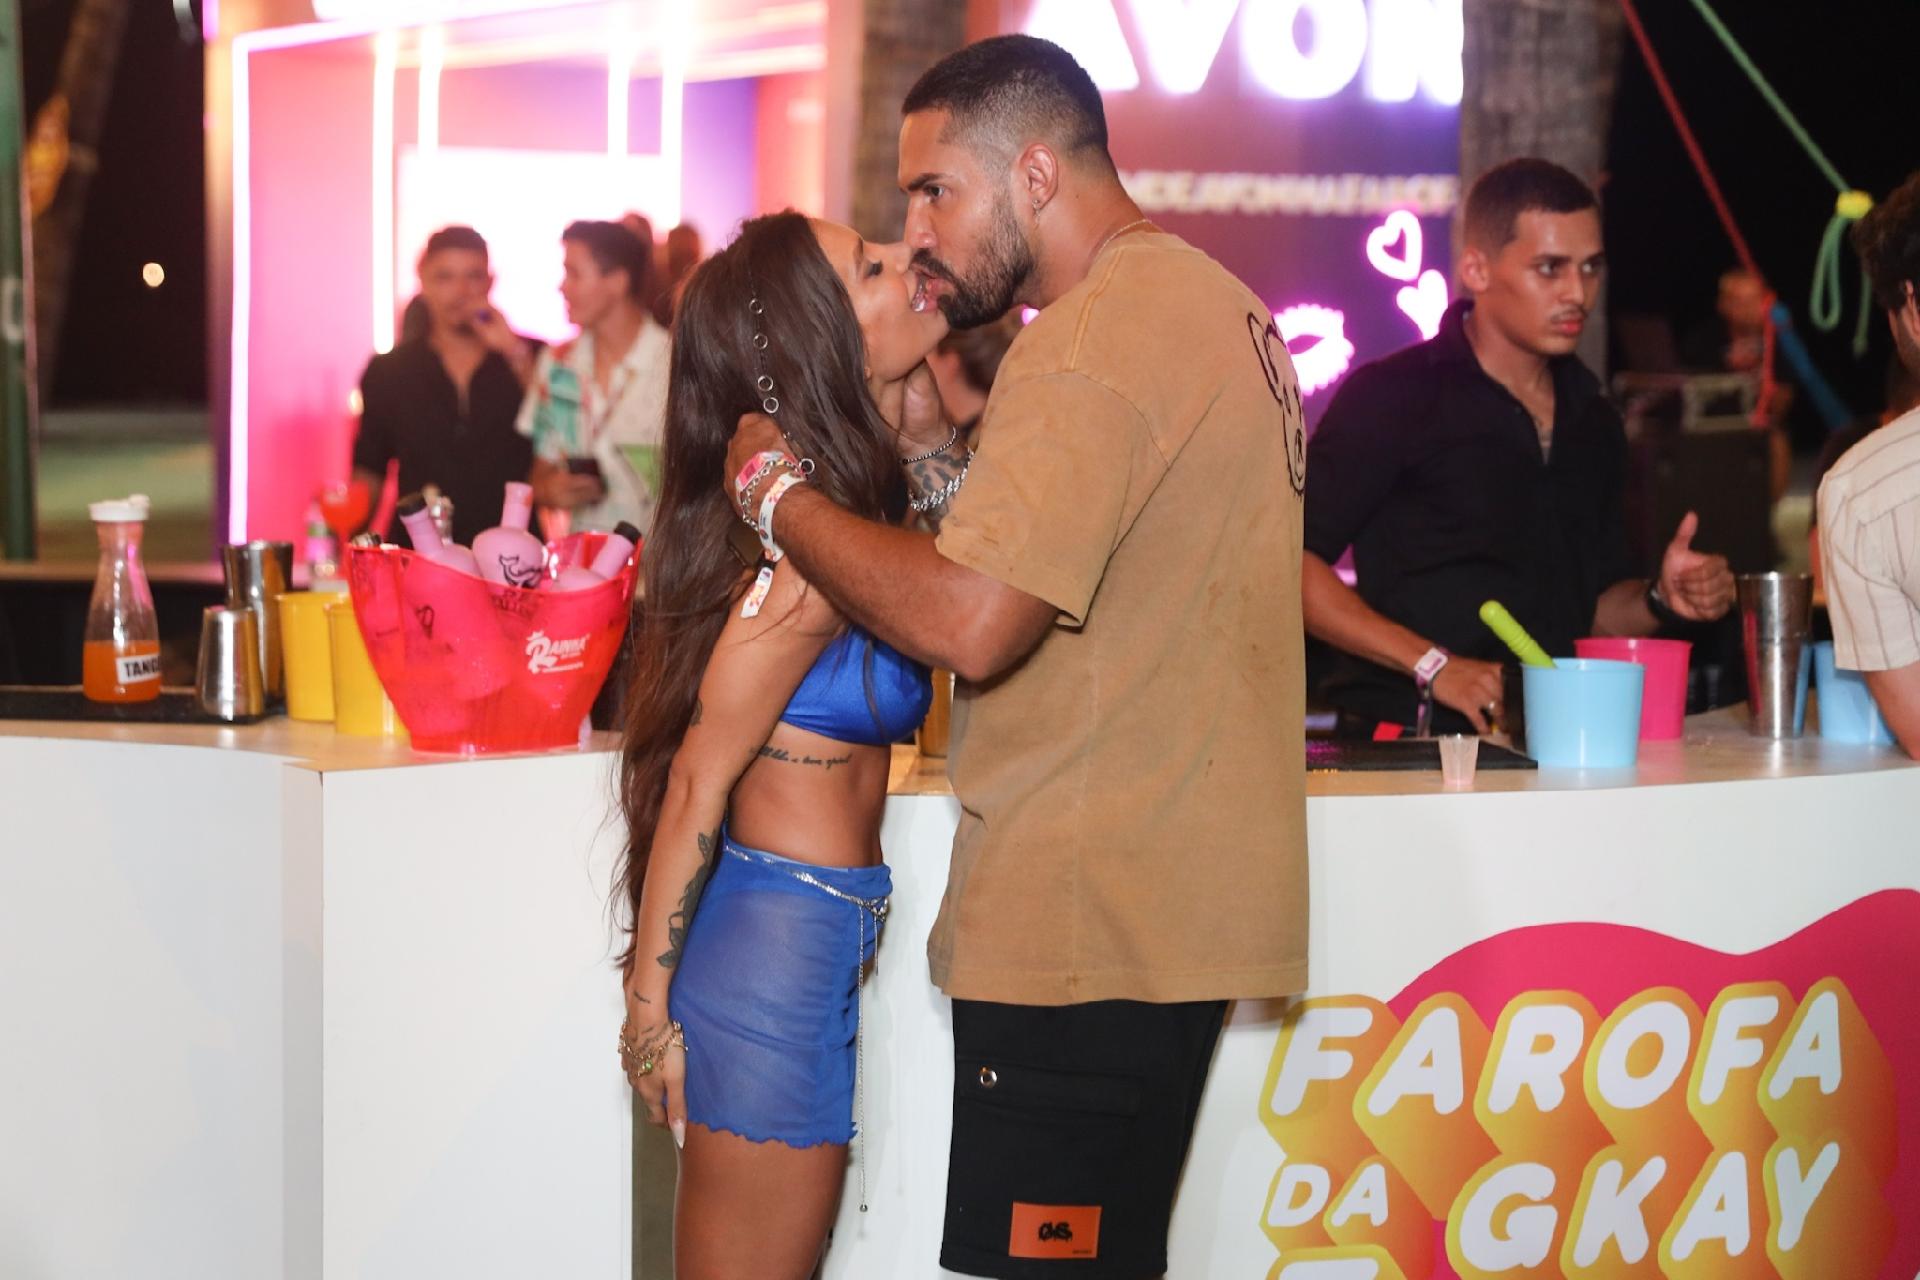 Namorada de Luva de Pedreiro revela que ele a viu pela primeira vez em  Fortaleza, na Farofa da Gkay - Zoeira - Diário do Nordeste